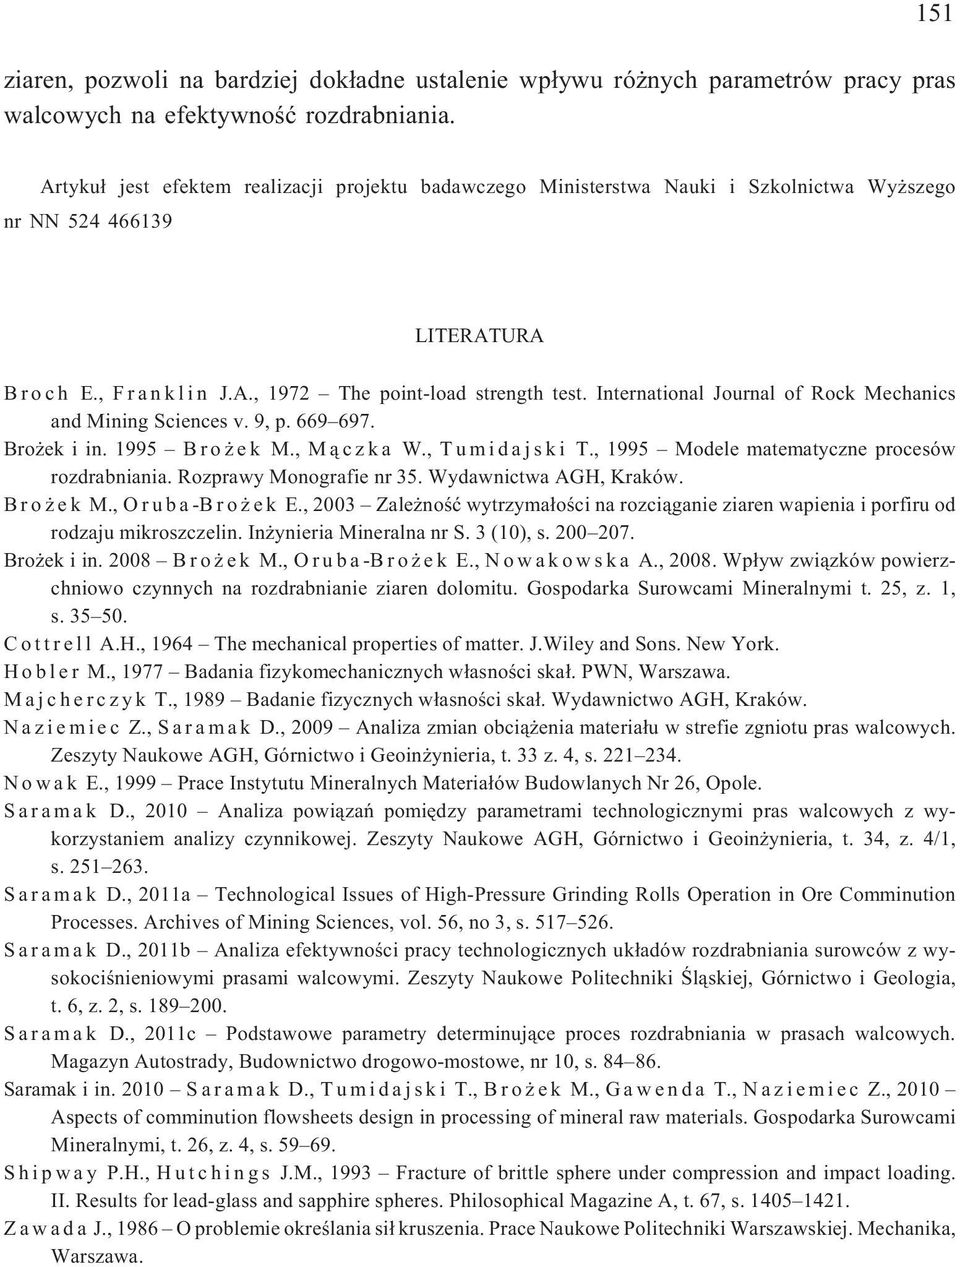 International Journal of Rock Mechanics and Mining Sciences v. 9, p. 669 697. Bro ek i in. 1995 Bro ek M., M¹czka W., Tumidajski T., 1995 Modele matematyczne procesów rozdrabniania.